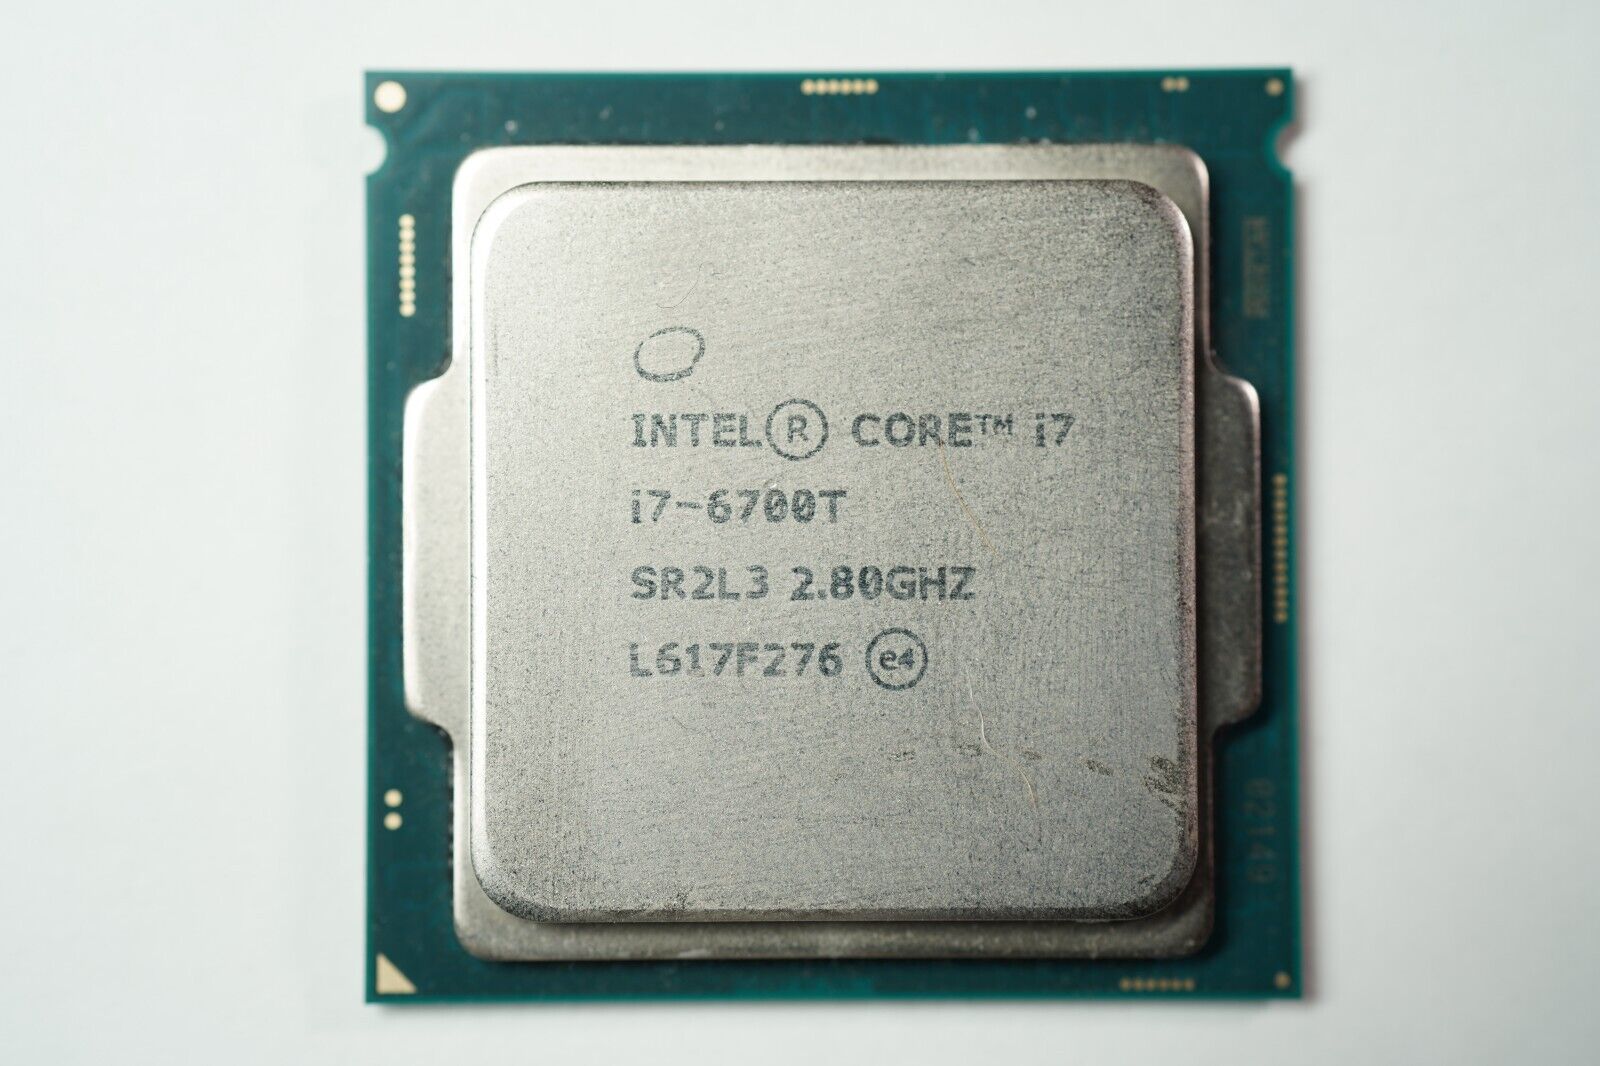 Intel Core i7-6700T 2.8 GHz 8GT/s LGA 1151 Desktop CPU Processor SR2L3